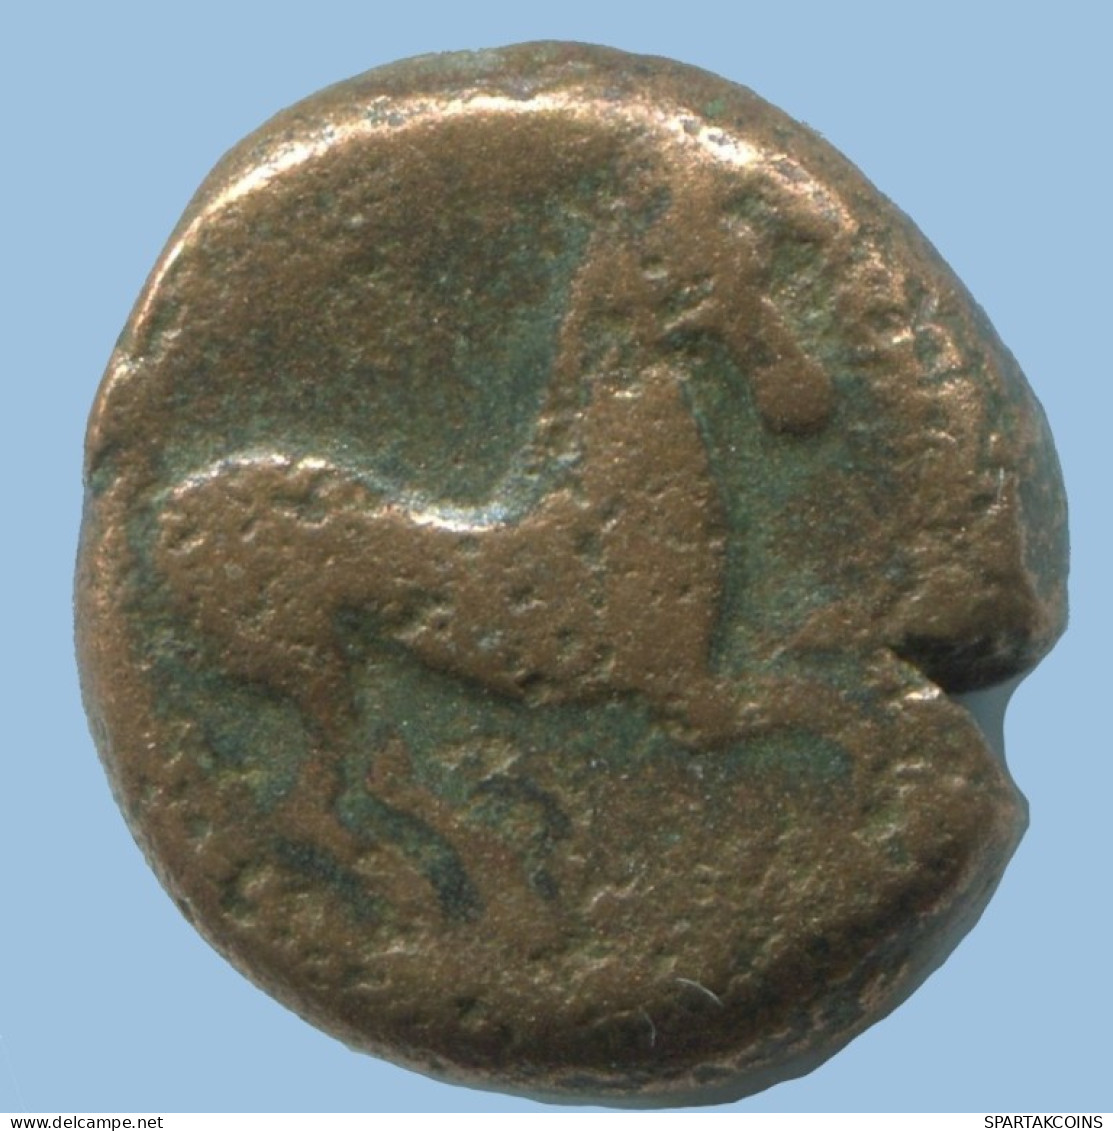 HORSE Authentique ORIGINAL GREC ANCIEN Pièce 5.2g/15mm #AG099.12.F.A - Greche